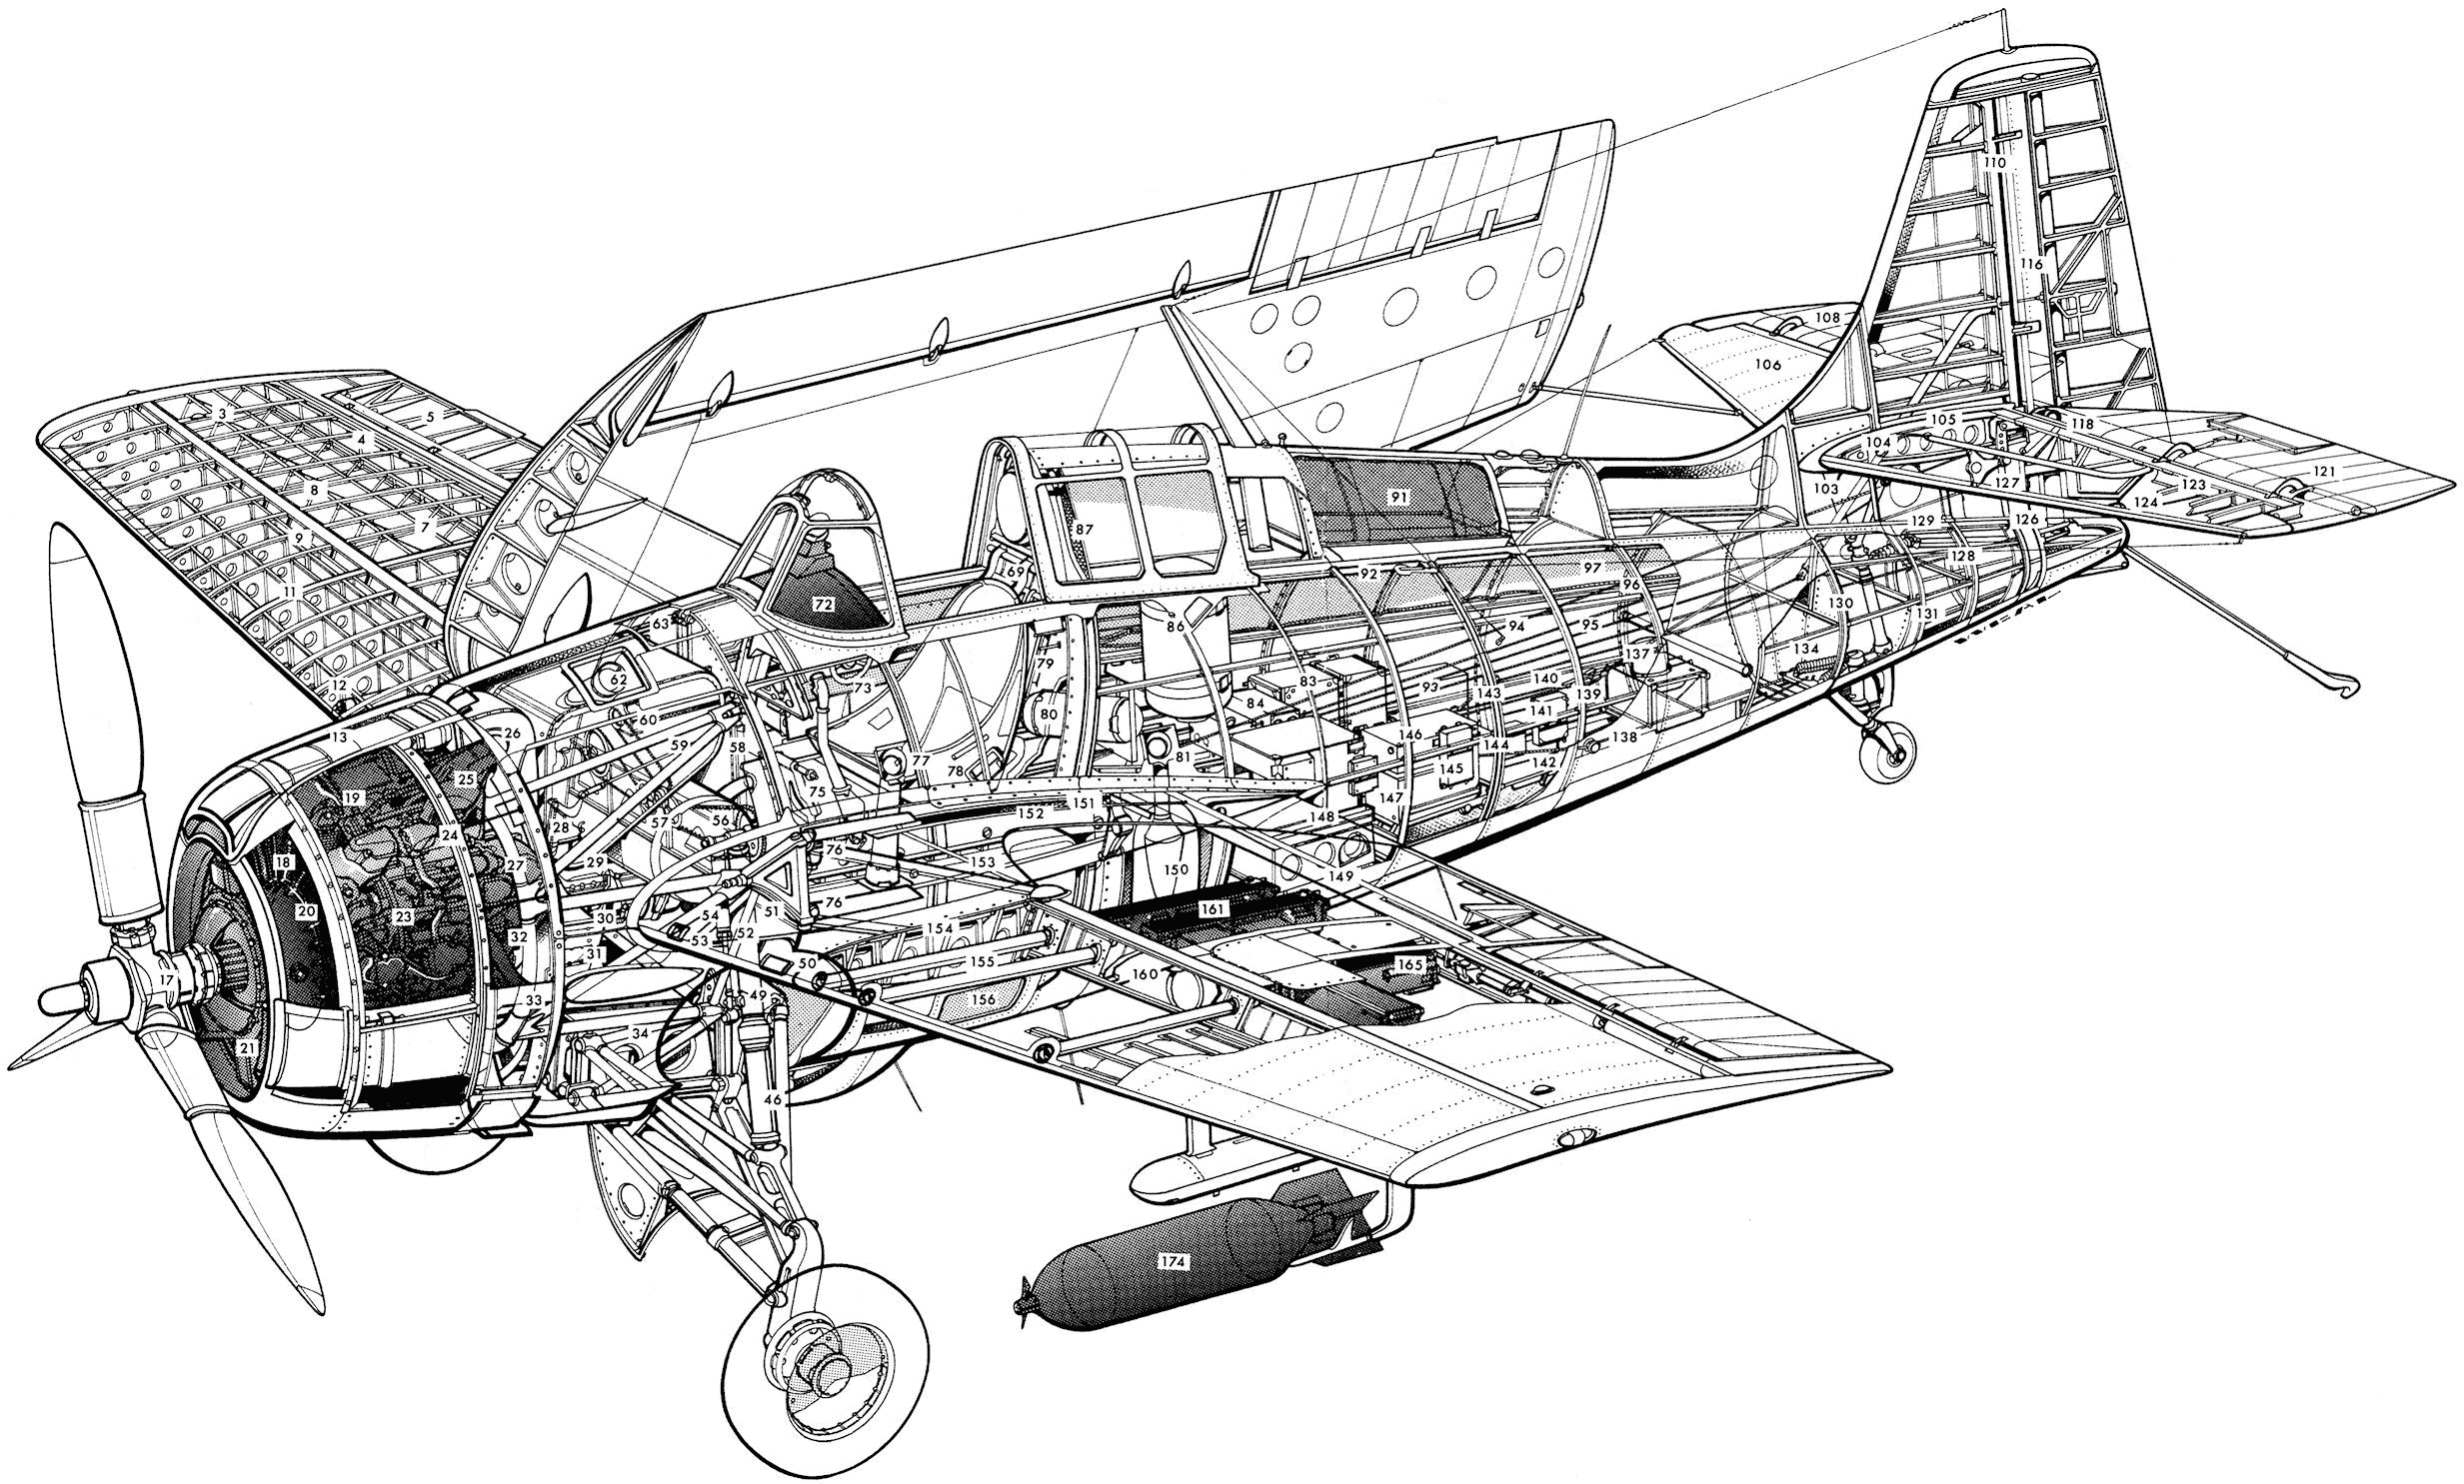 Grumman F4F Wildcat cutaway